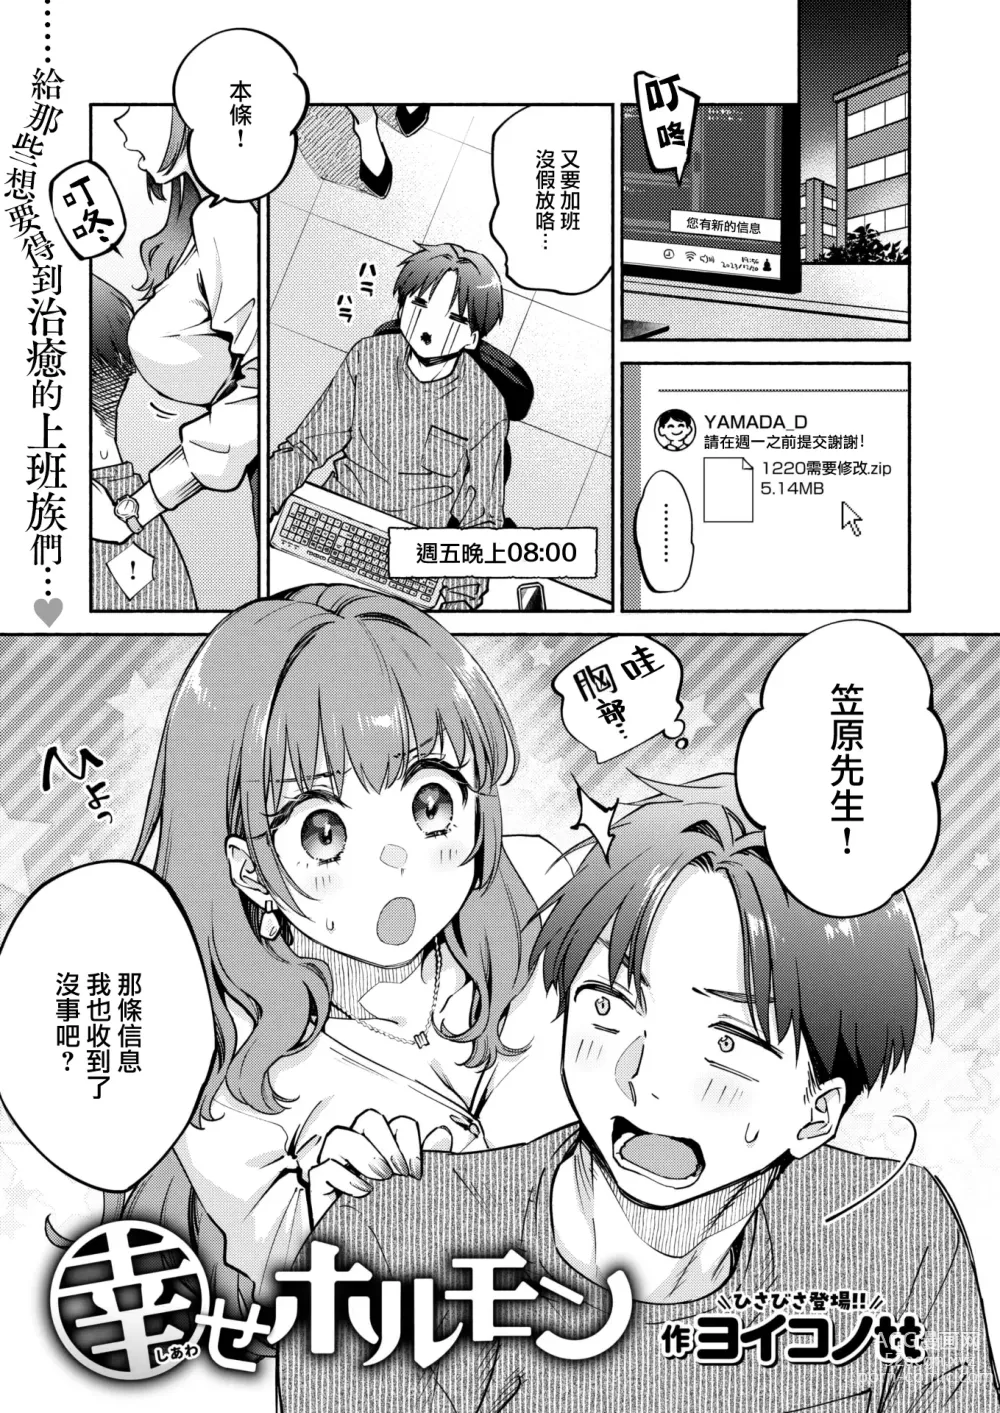 Page 2 of manga Shiawase Hormone